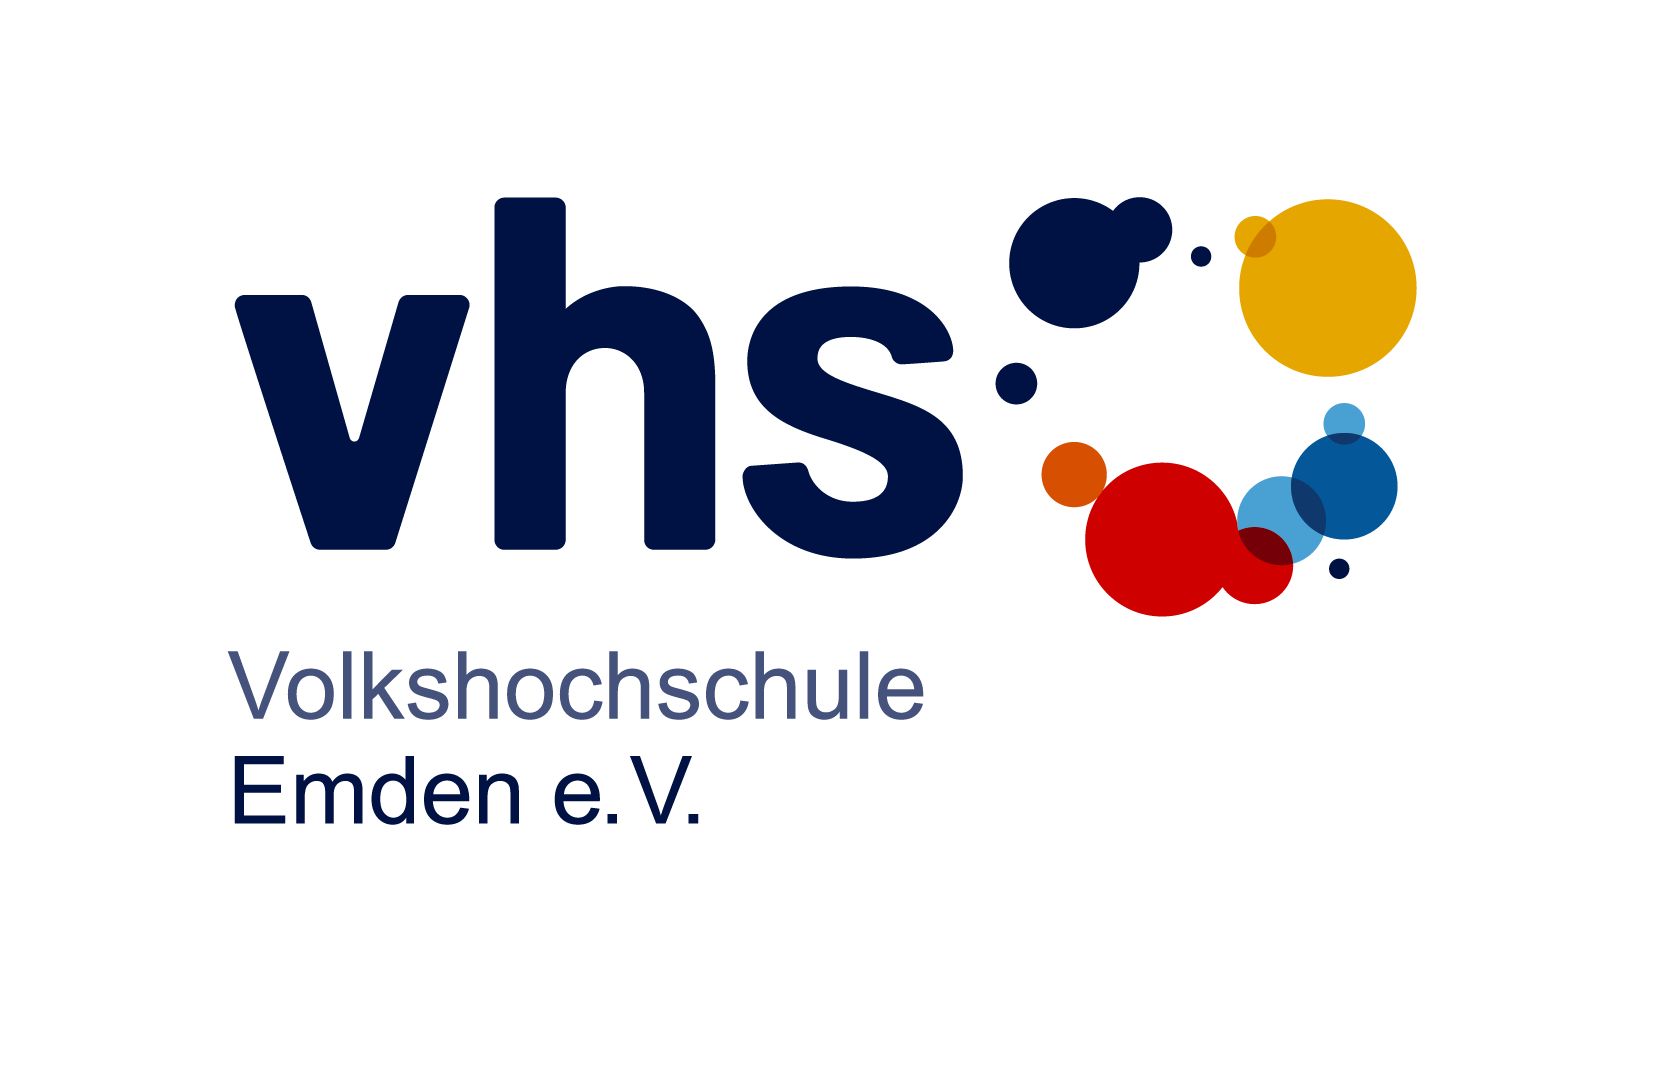 Volkshochschule Emden